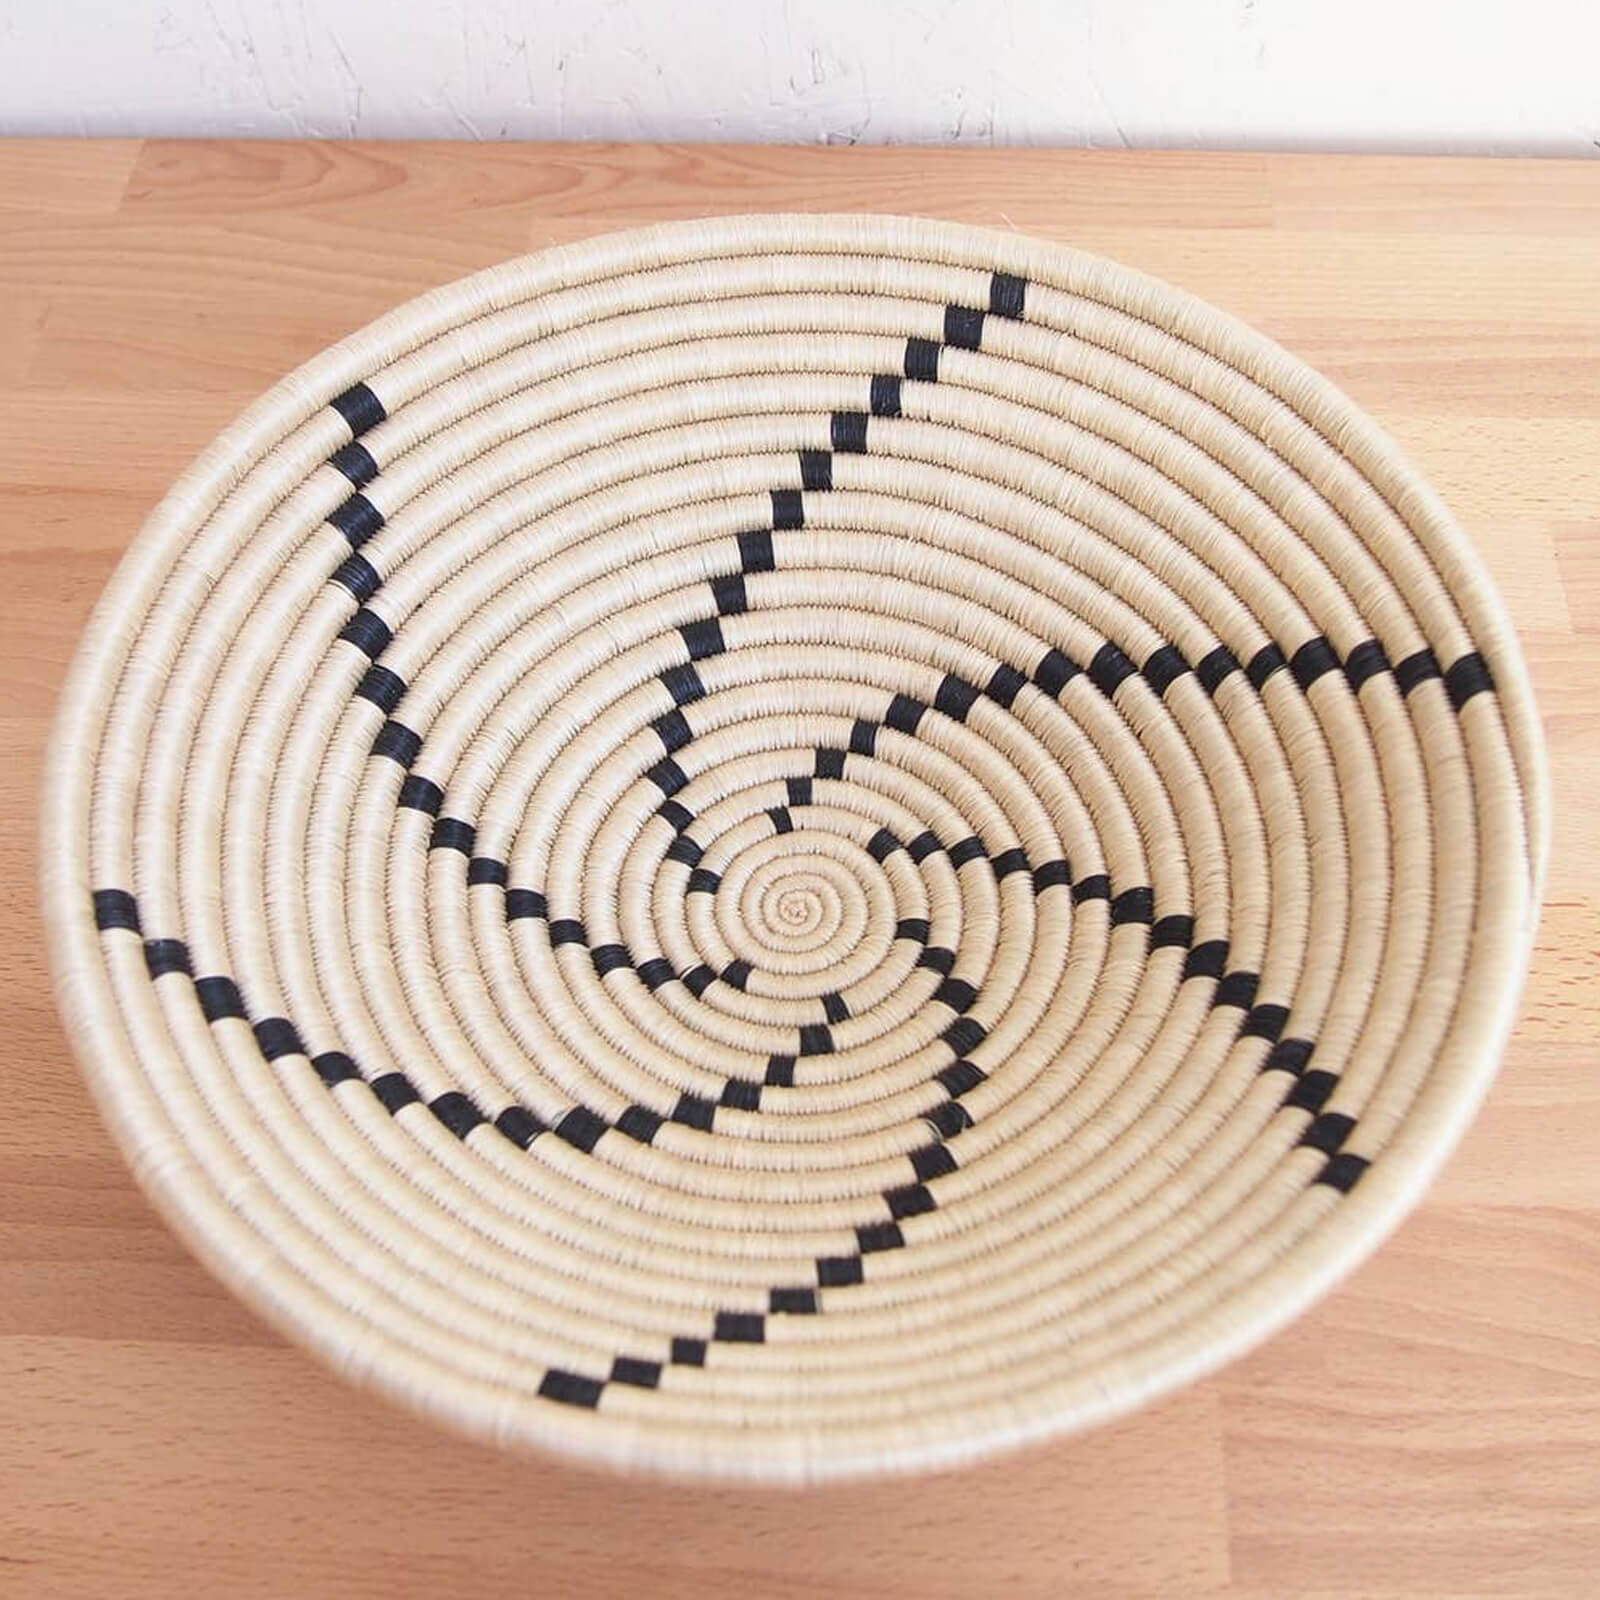 Hand Woven Tanga Basket - Tan and Black